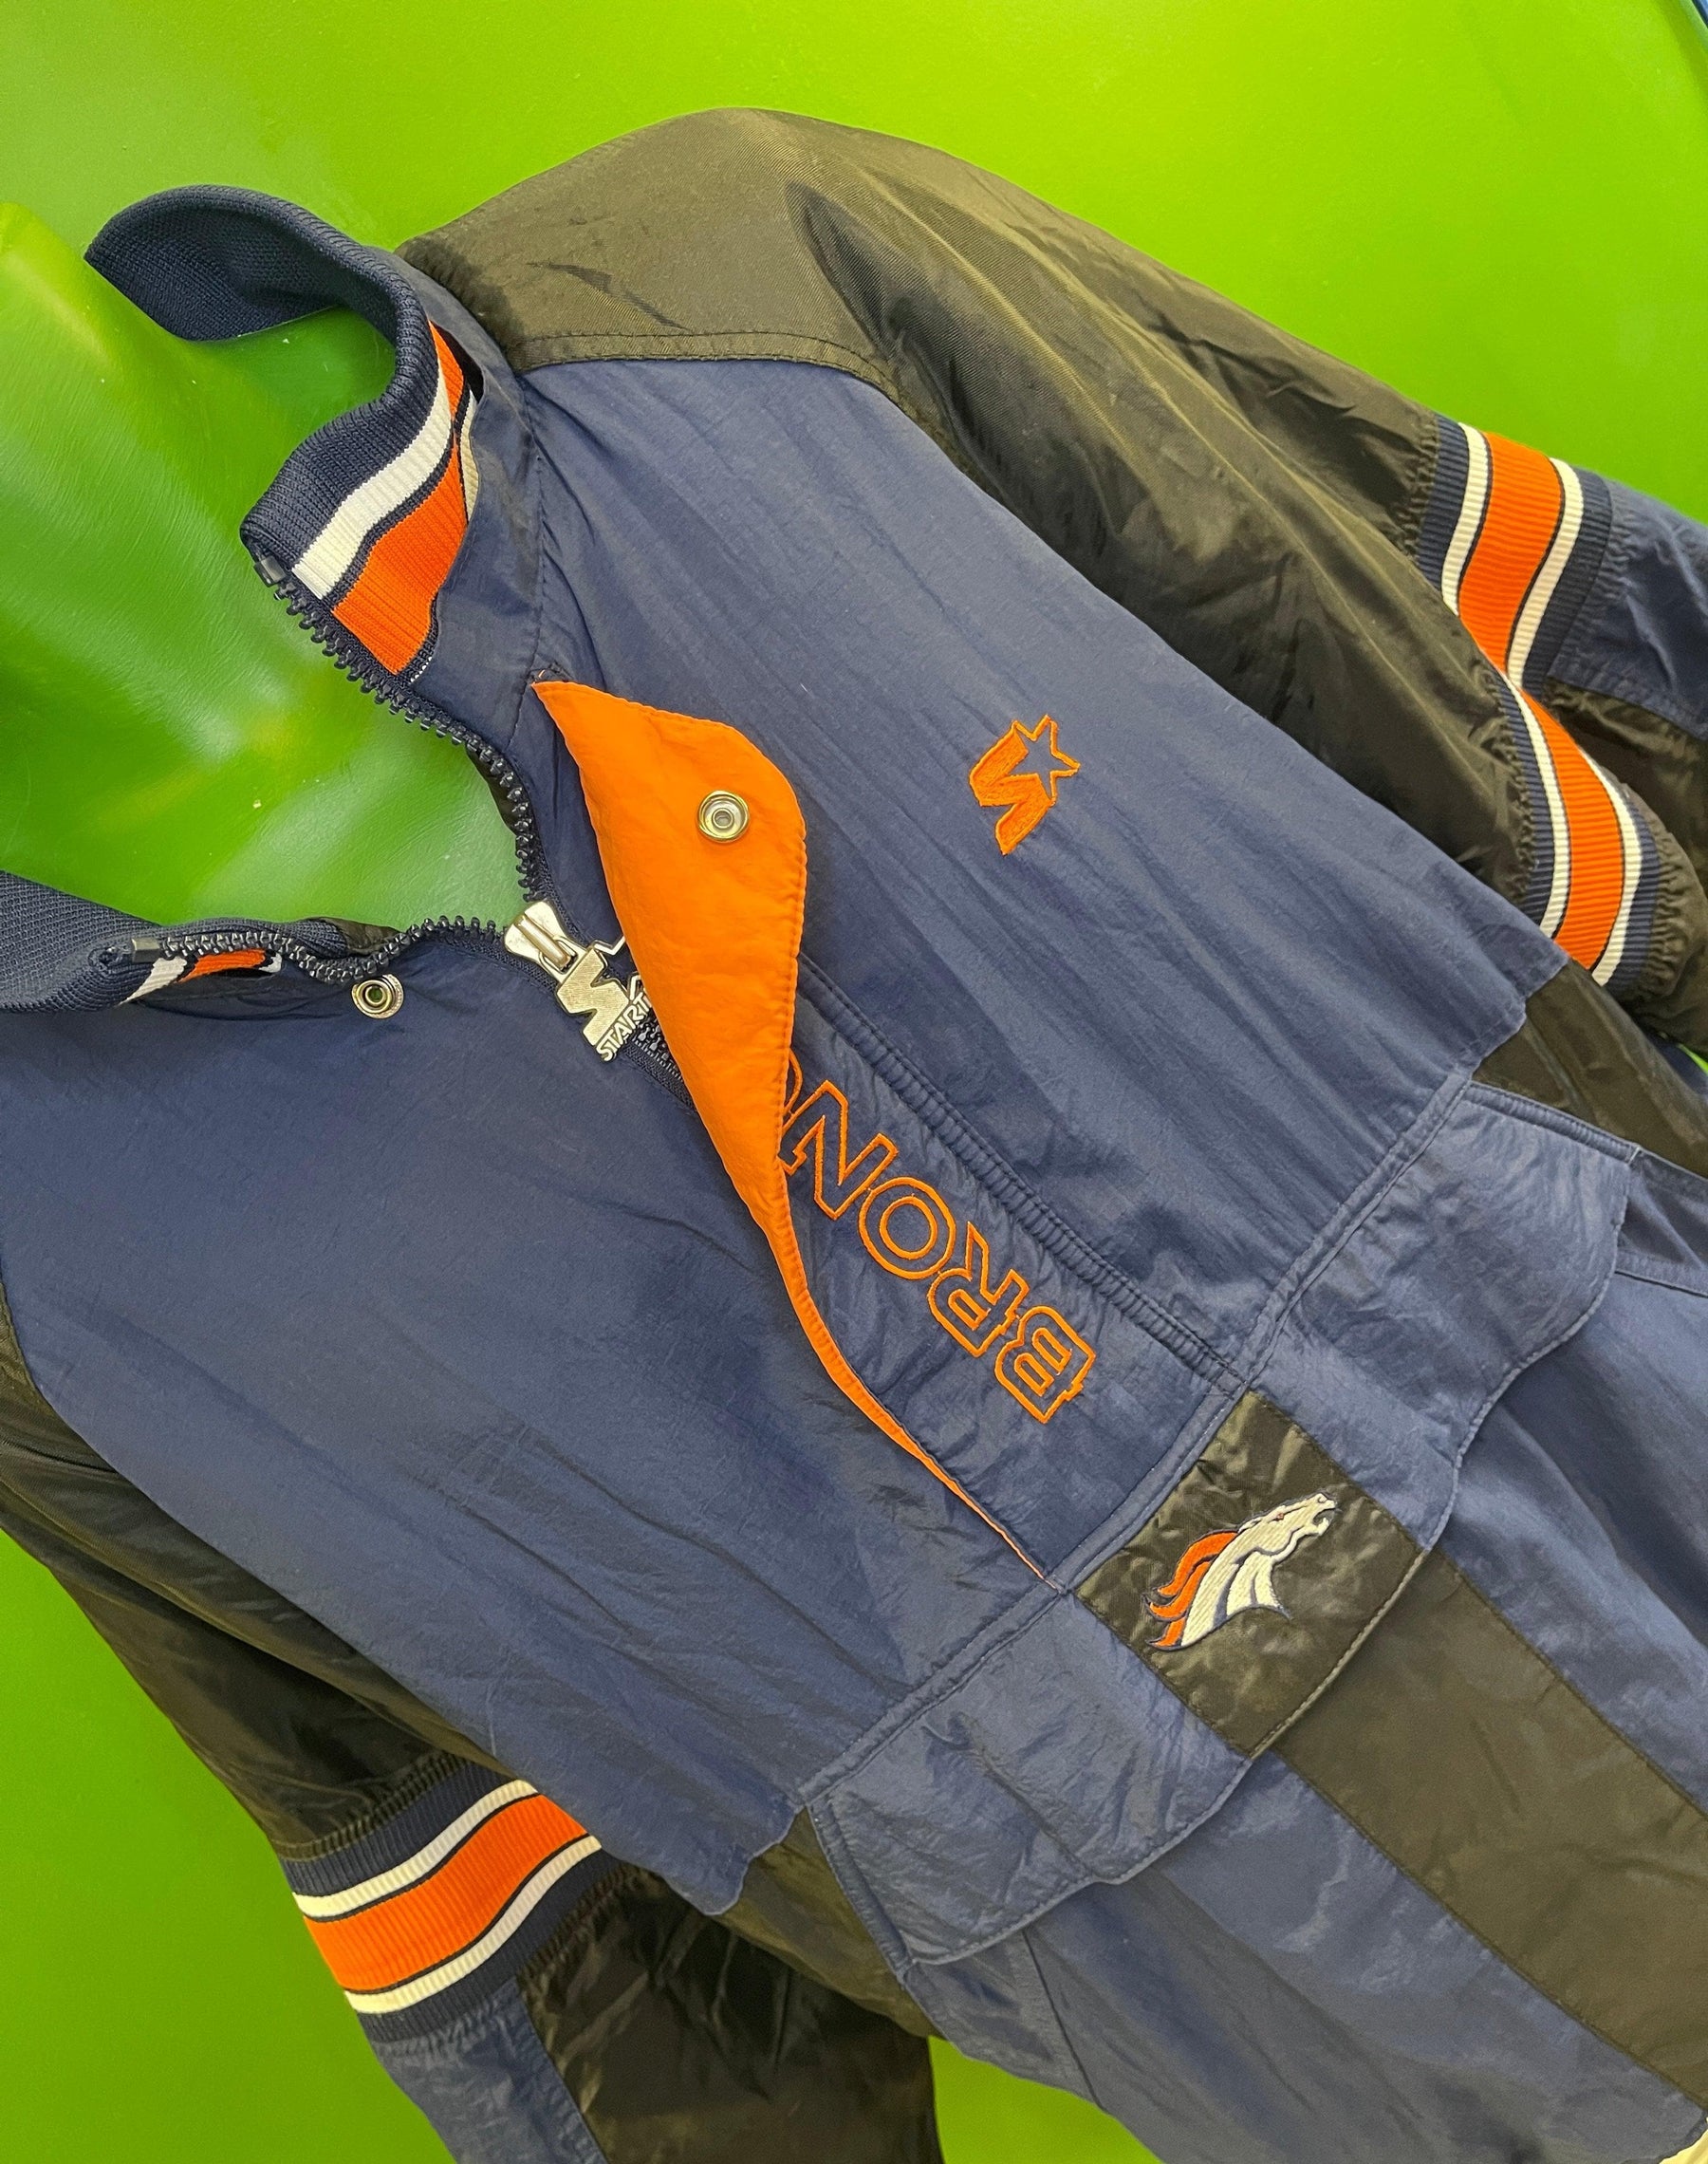 NFL Denver Broncos Pro Line Starter Vintage 1/2 Zip Jacket Coat Men's X-Large